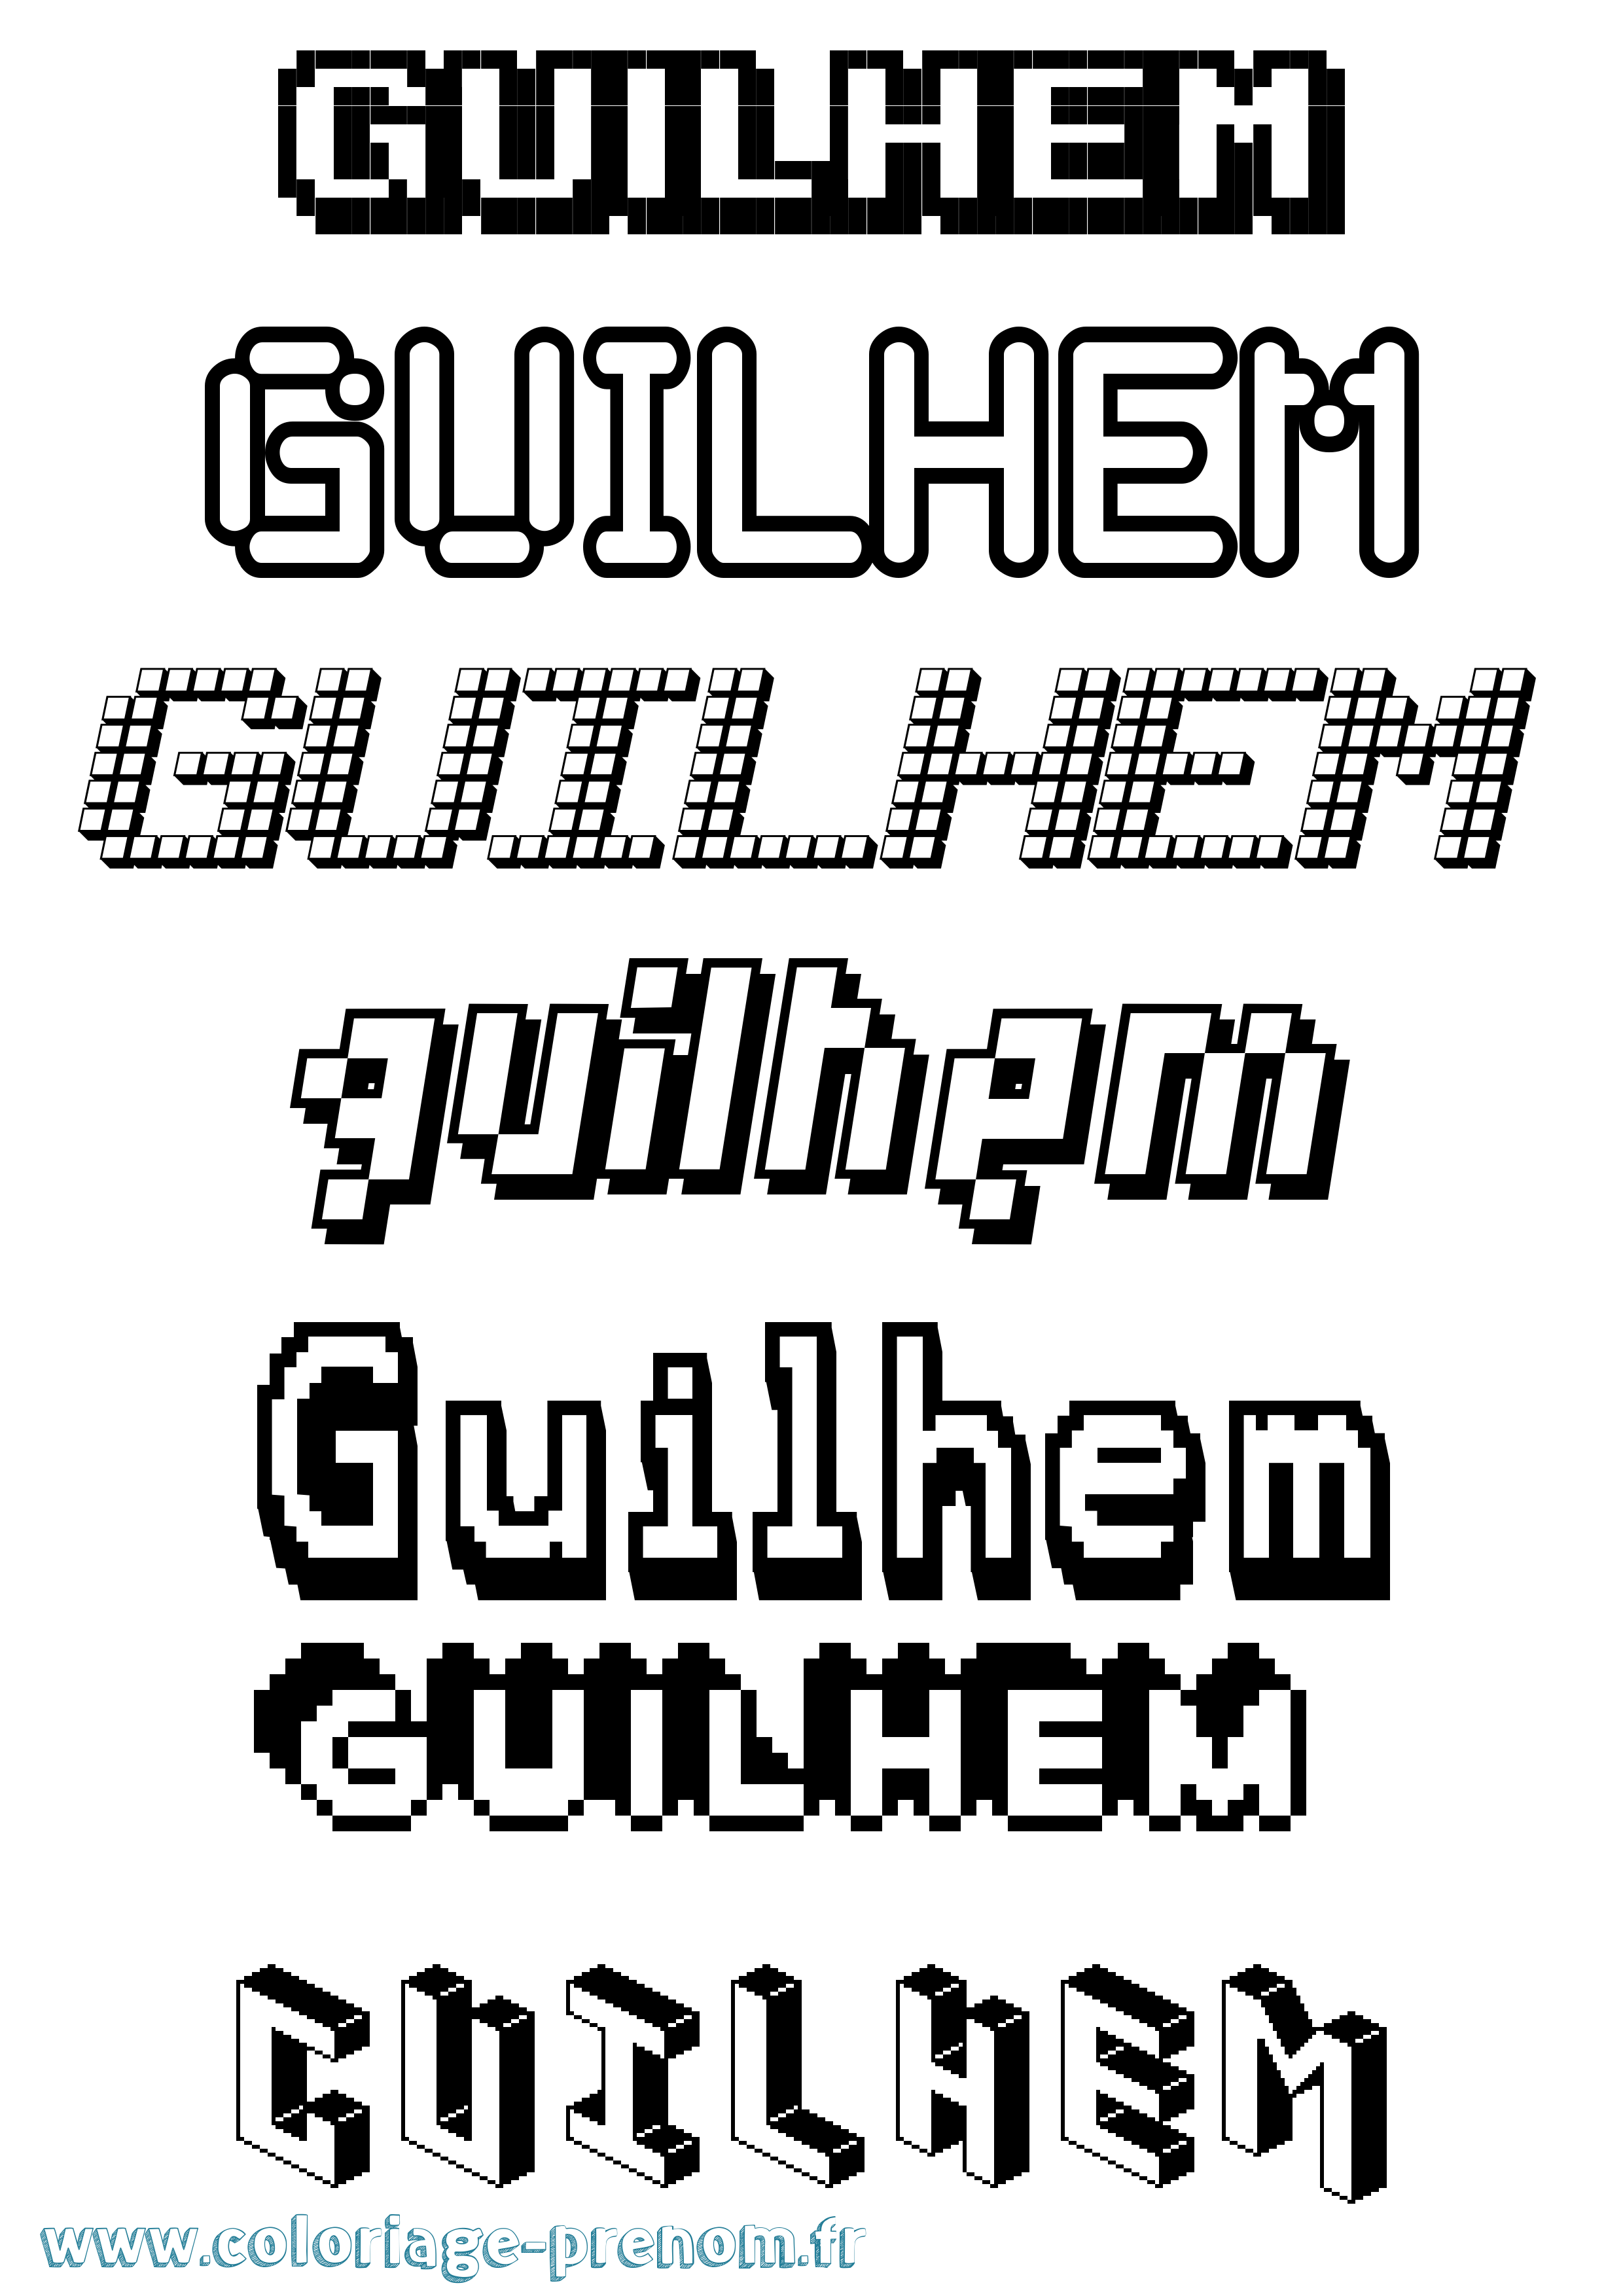 Coloriage prénom Guilhem